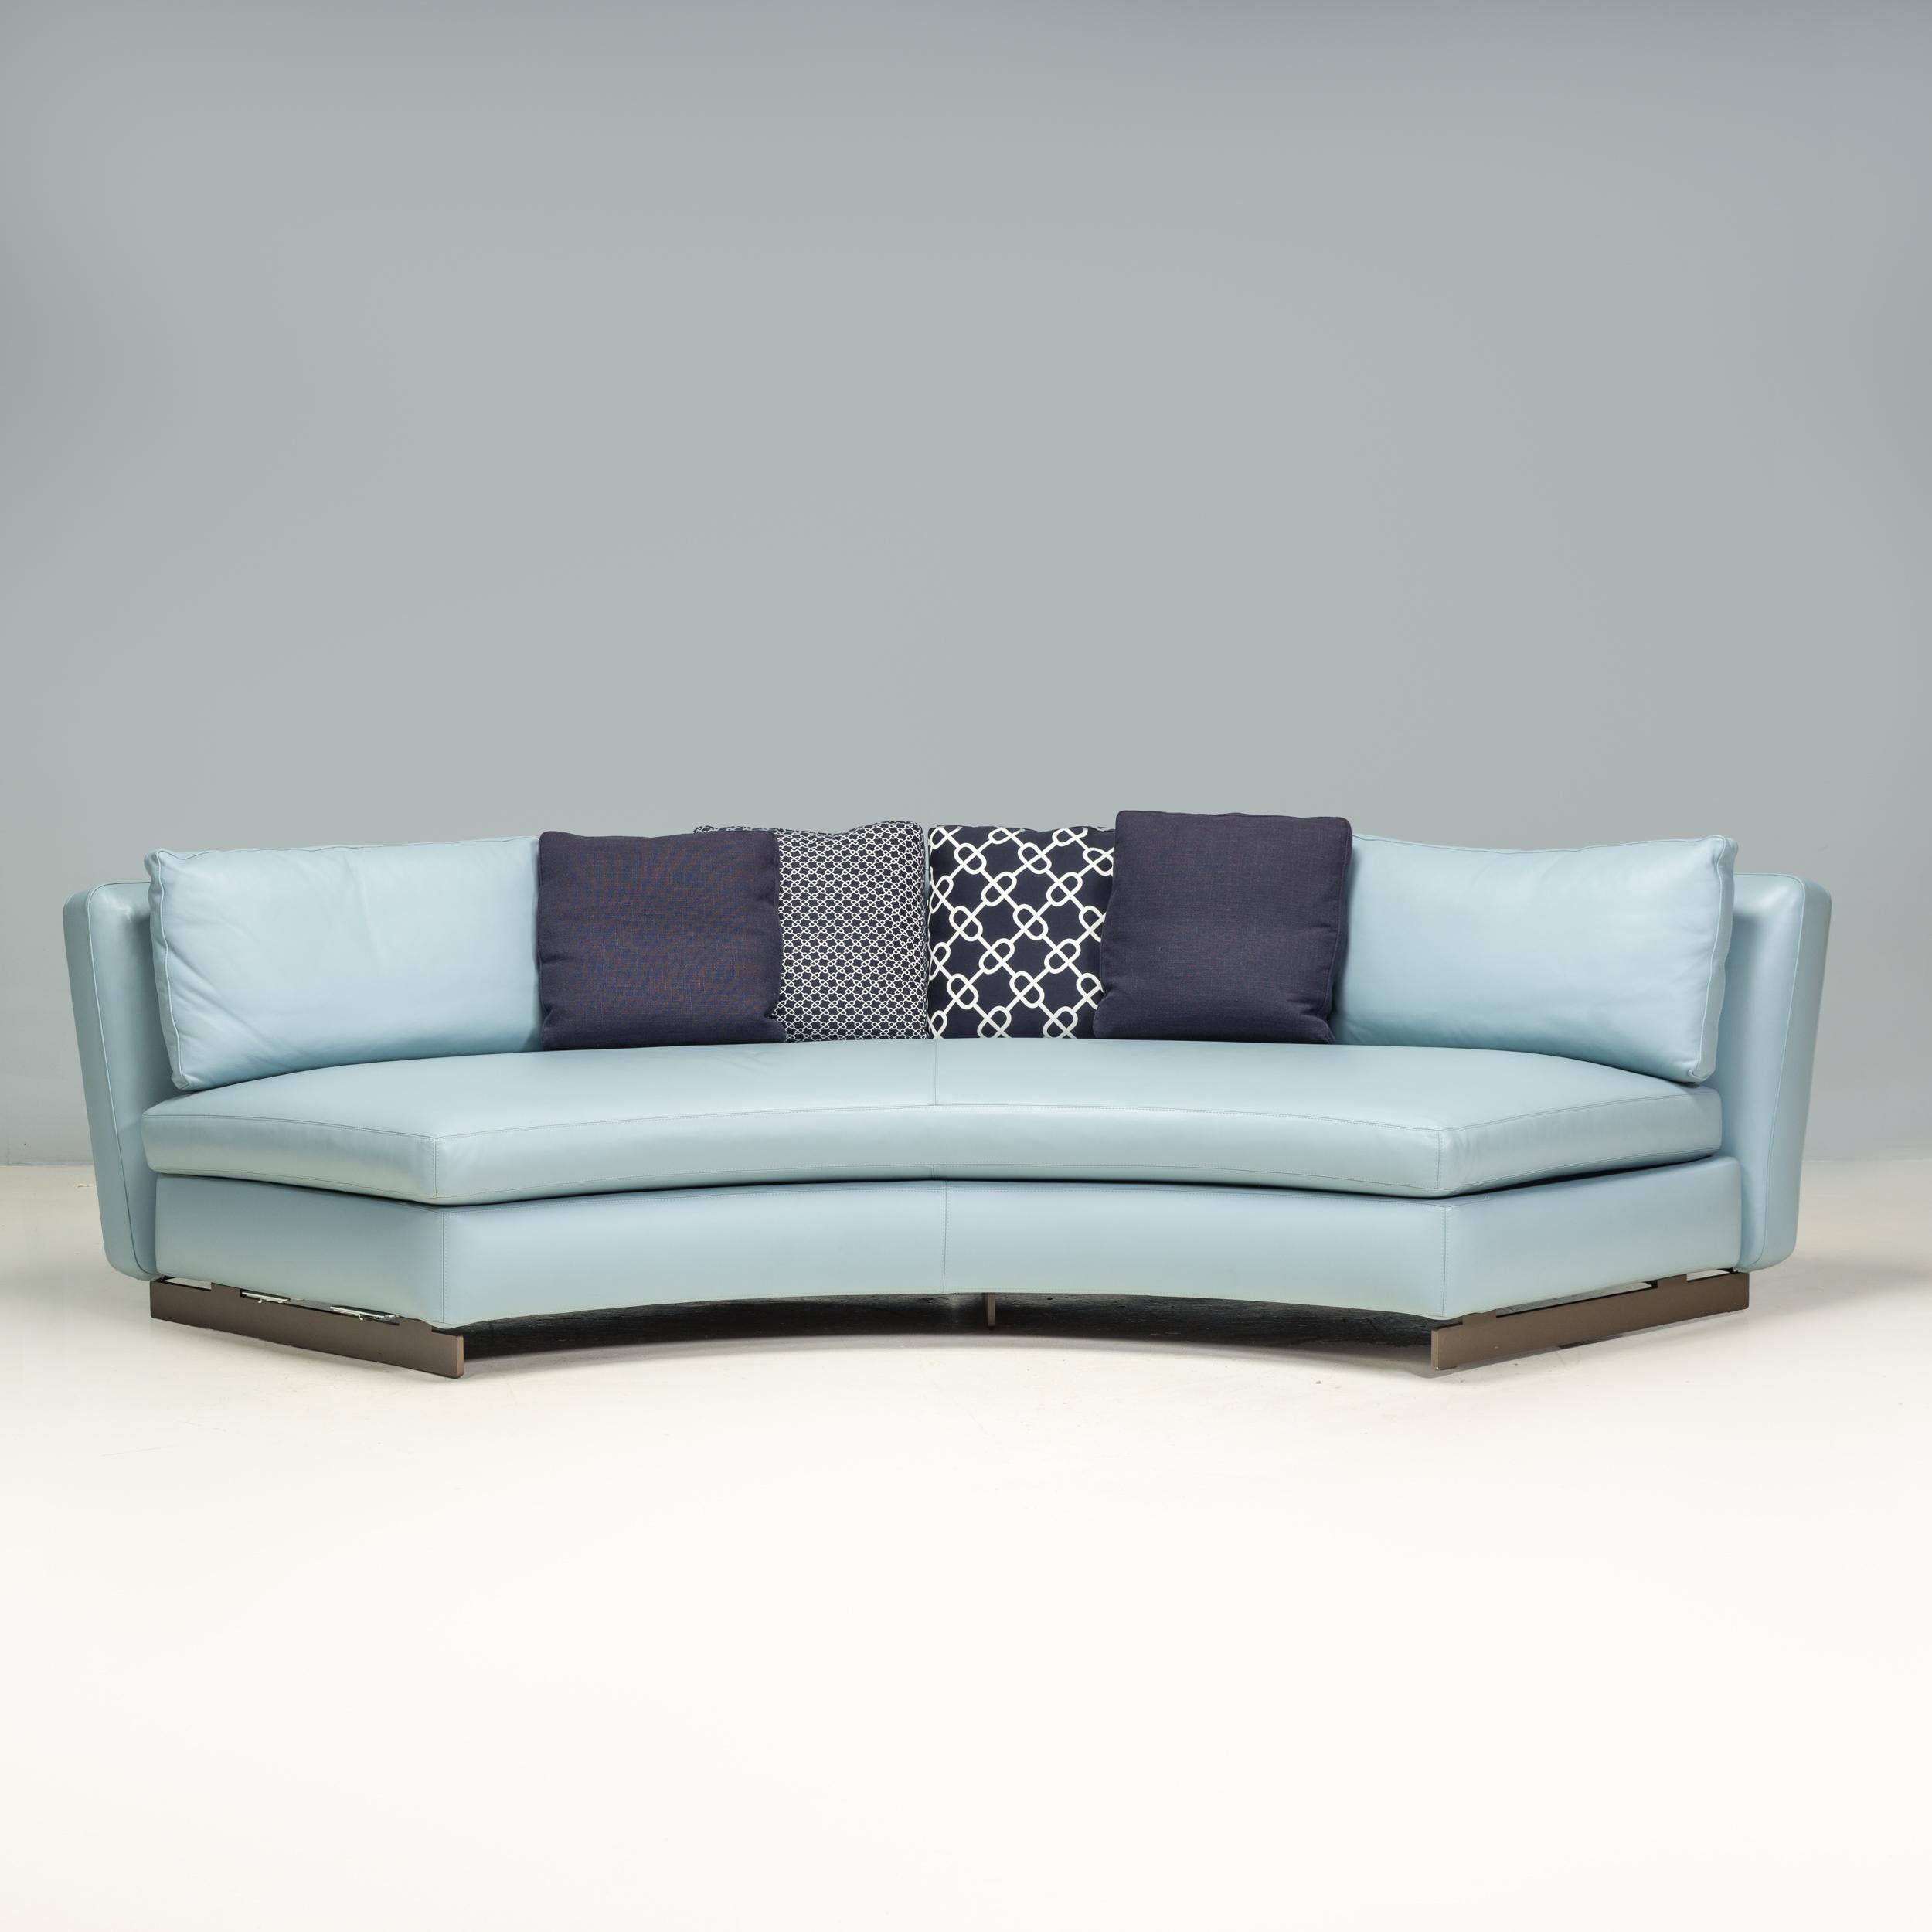 Conçu à l'origine par Roldolfo Dordoni en 2015 et fabriqué par Minotti, le canapé bas Seymour est un fantastique exemple de design italien moderne.

Doté d'une silhouette galbée, le canapé présente une assise semi-circulaire avec un dossier incurvé